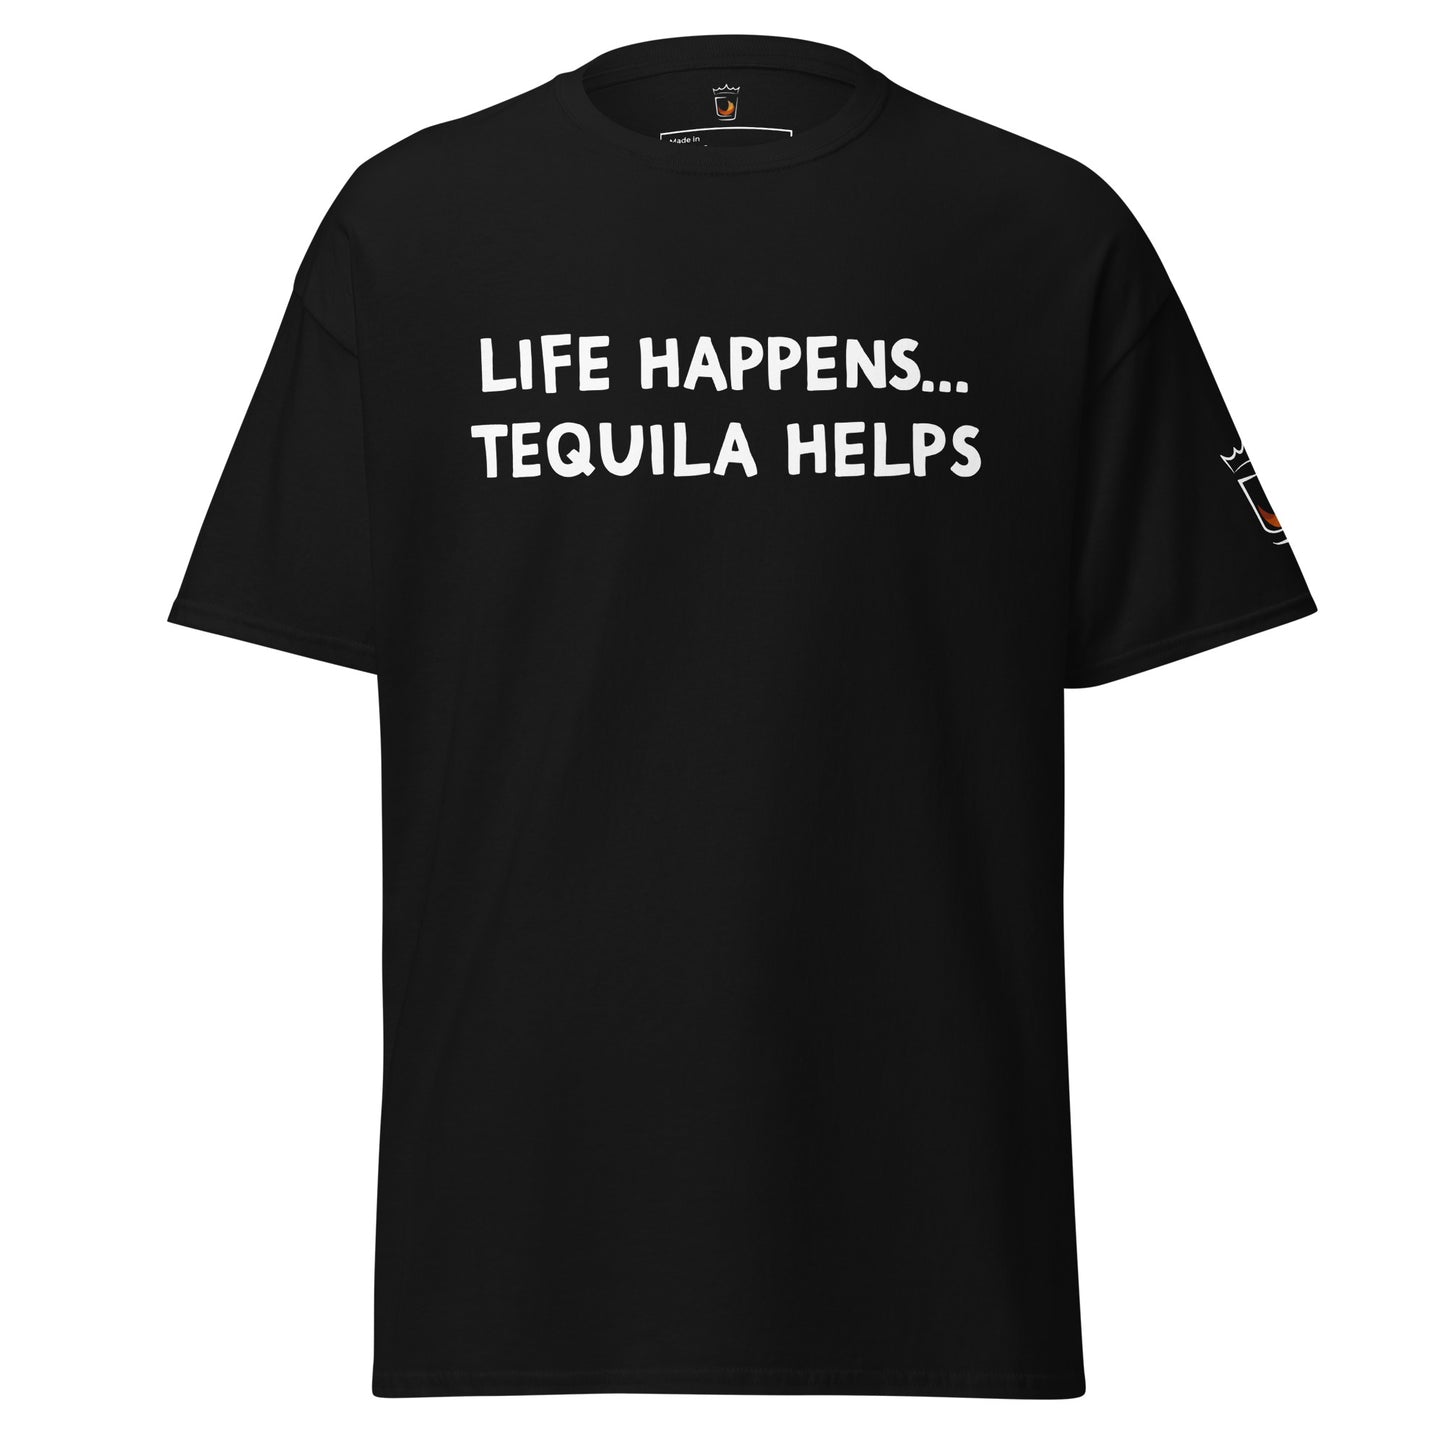 Life Happens... Tequila Helps